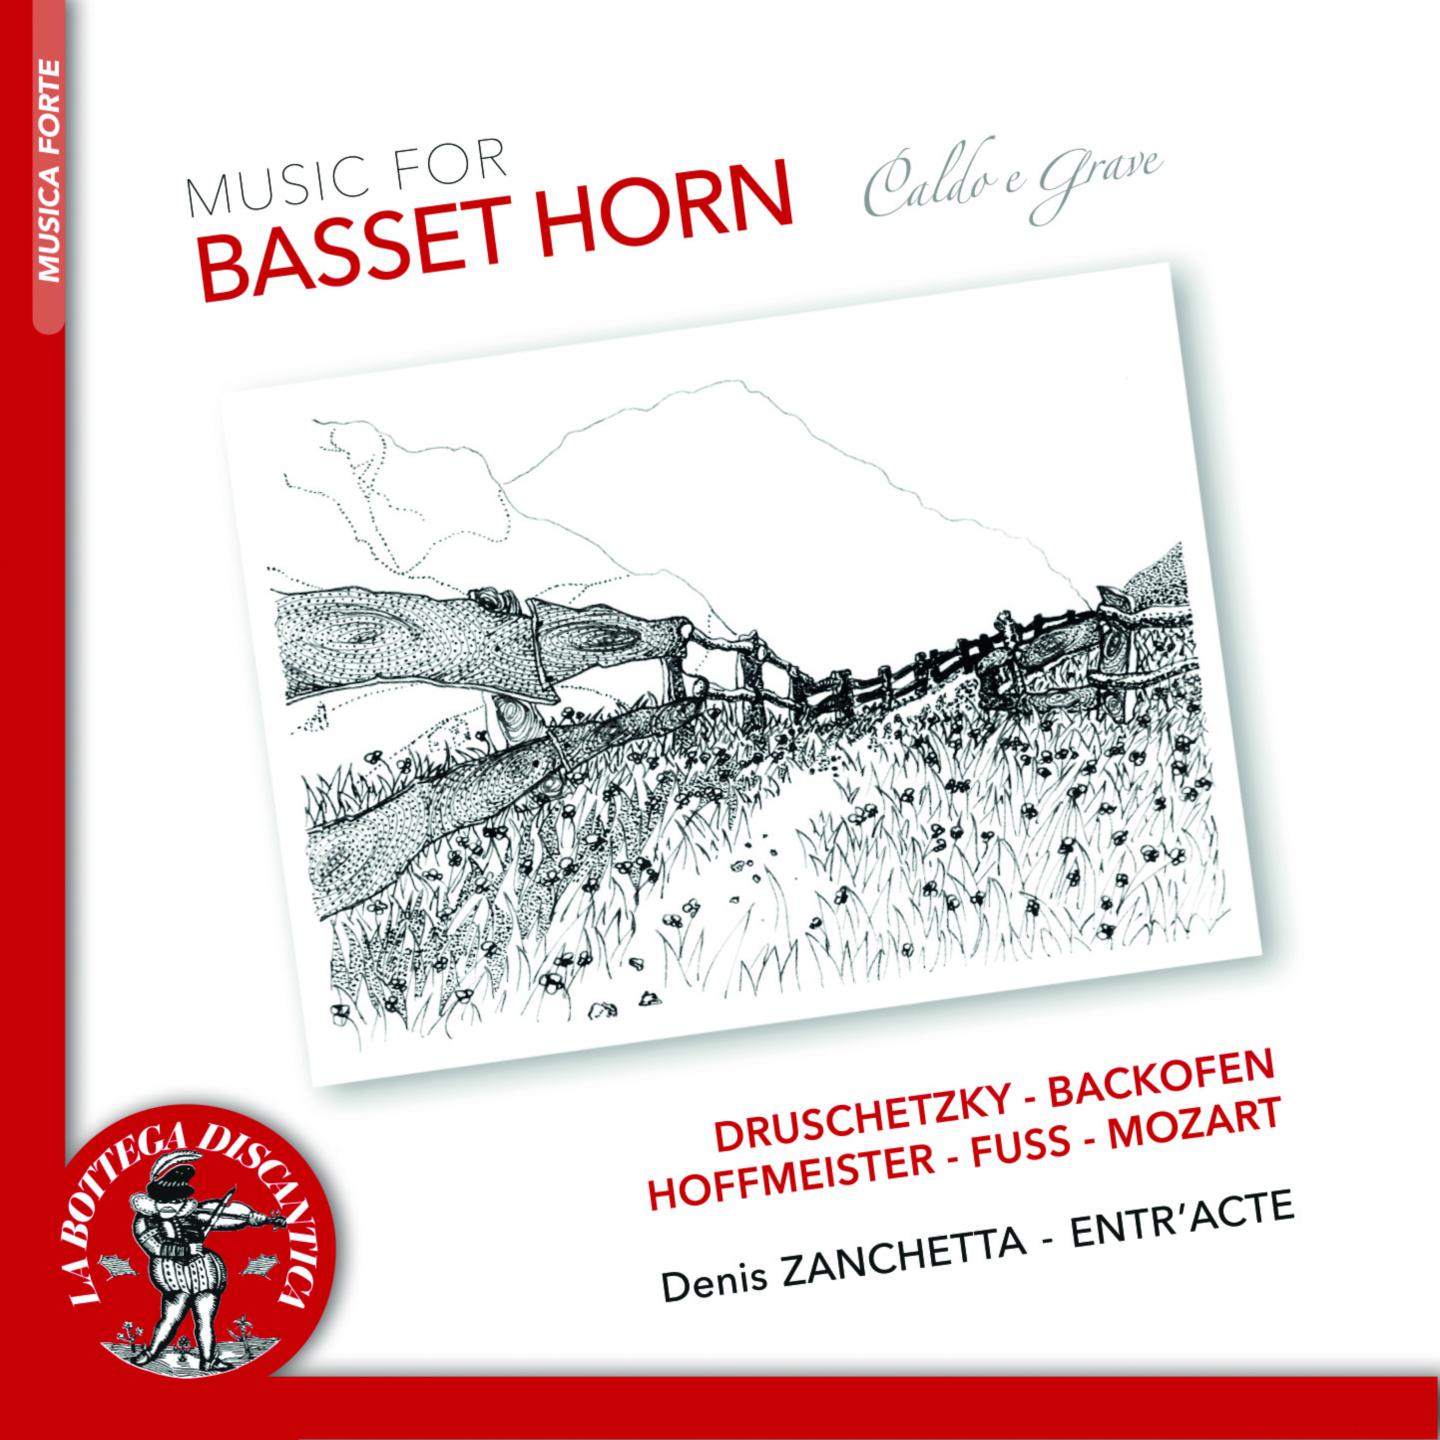 Music for Basset Horn - Caldo e grave